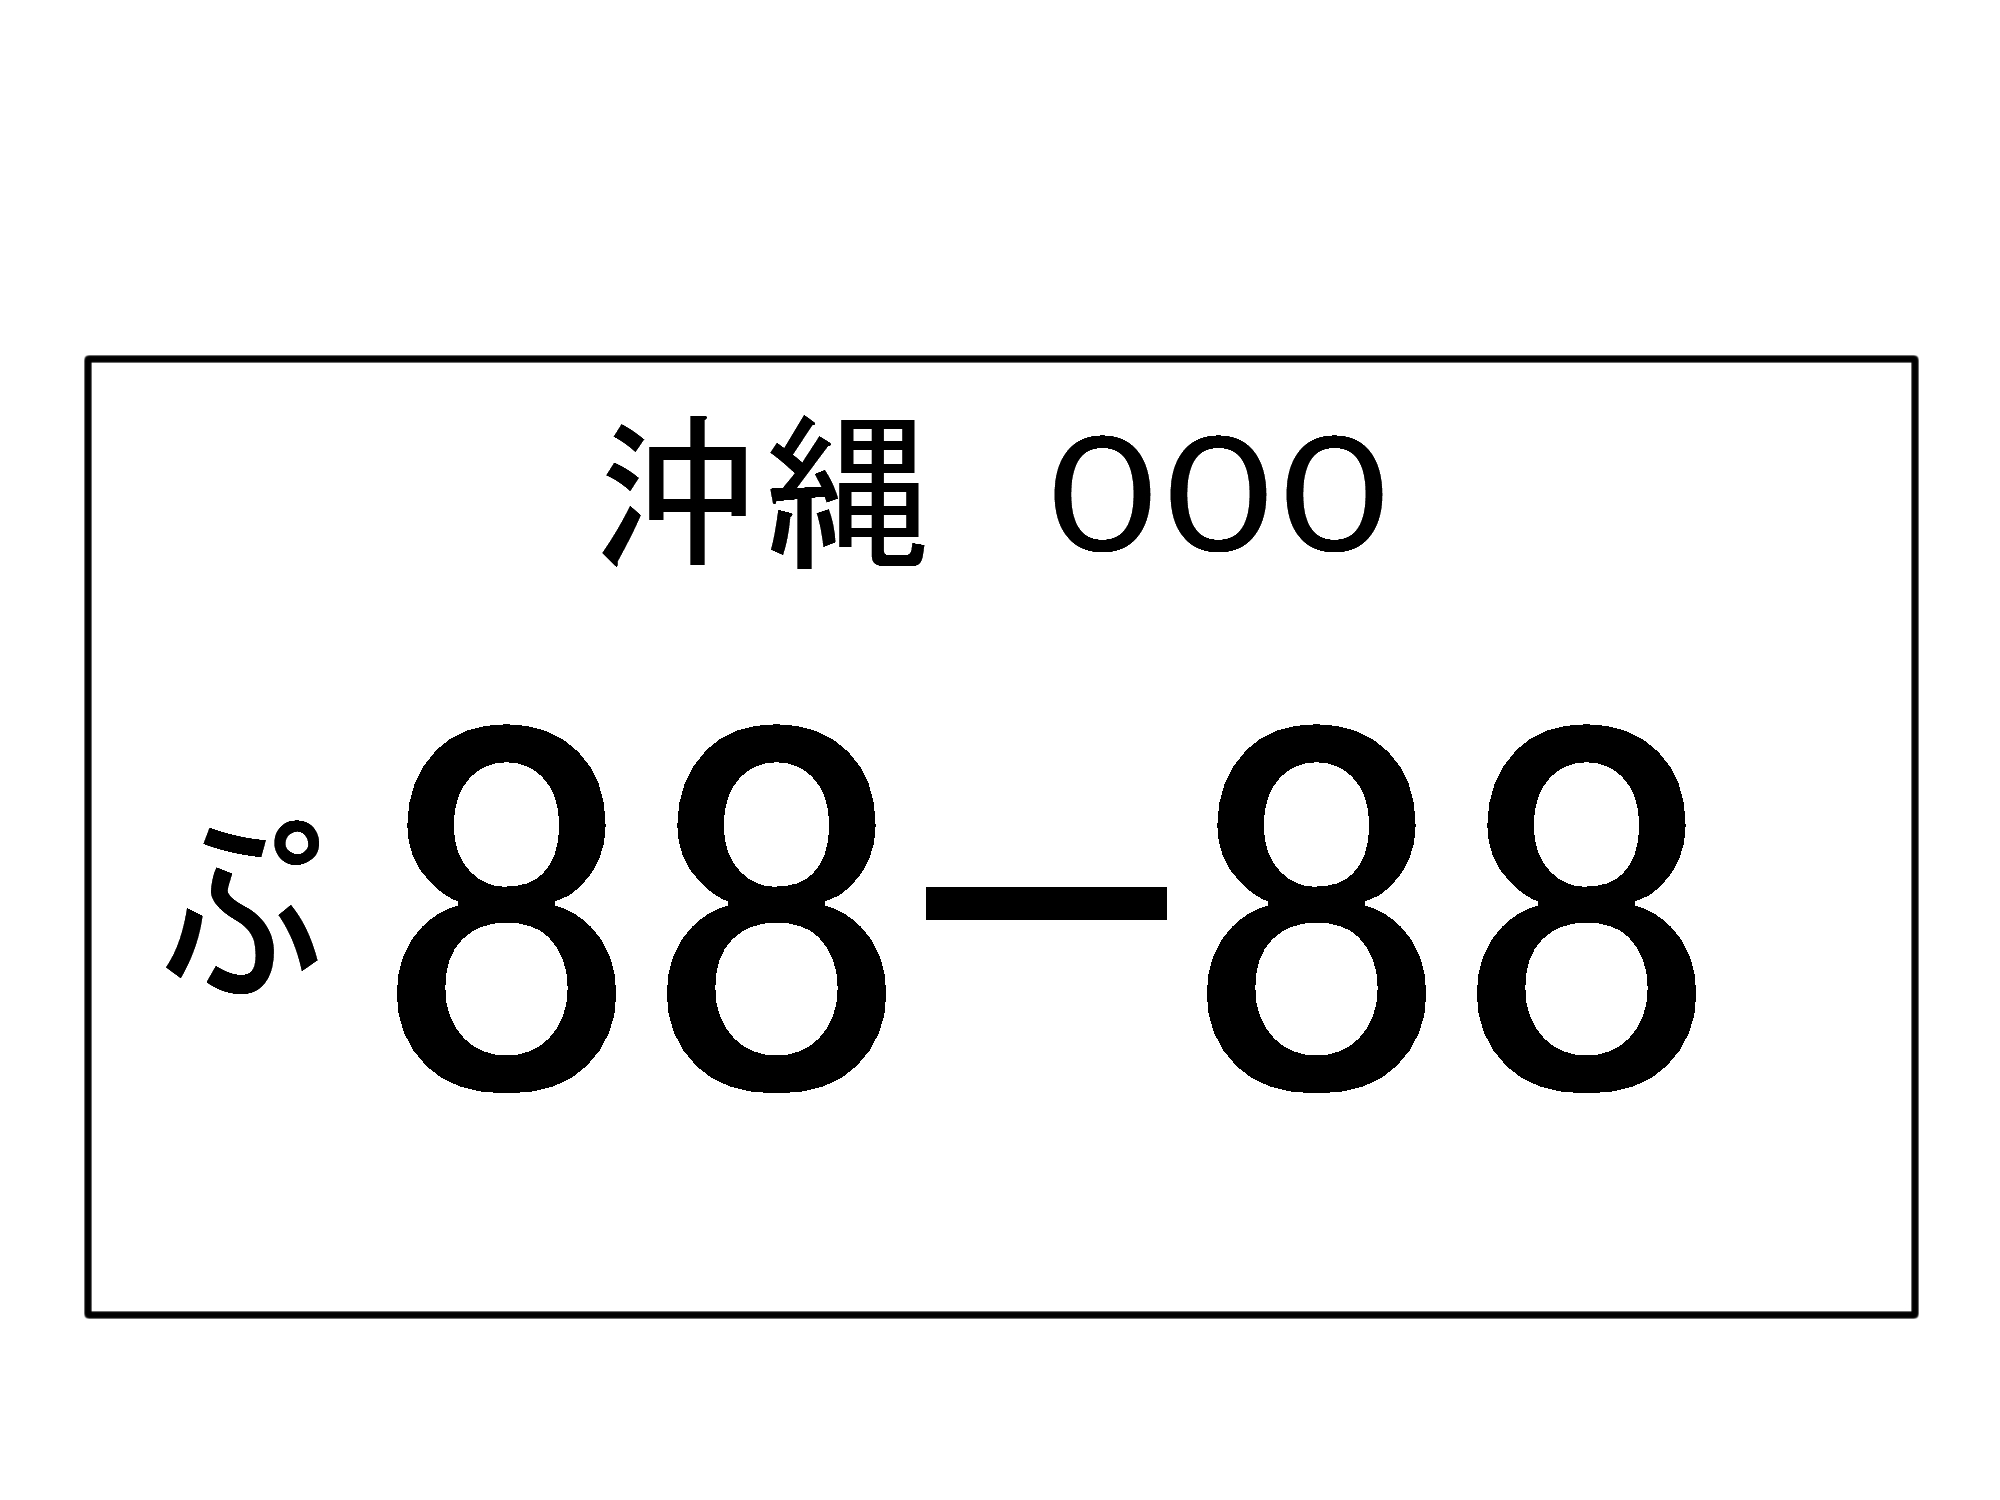 8888ナンバーに抱いた疑問を検証する - 沖縄B級ポータル - DEEokinawa